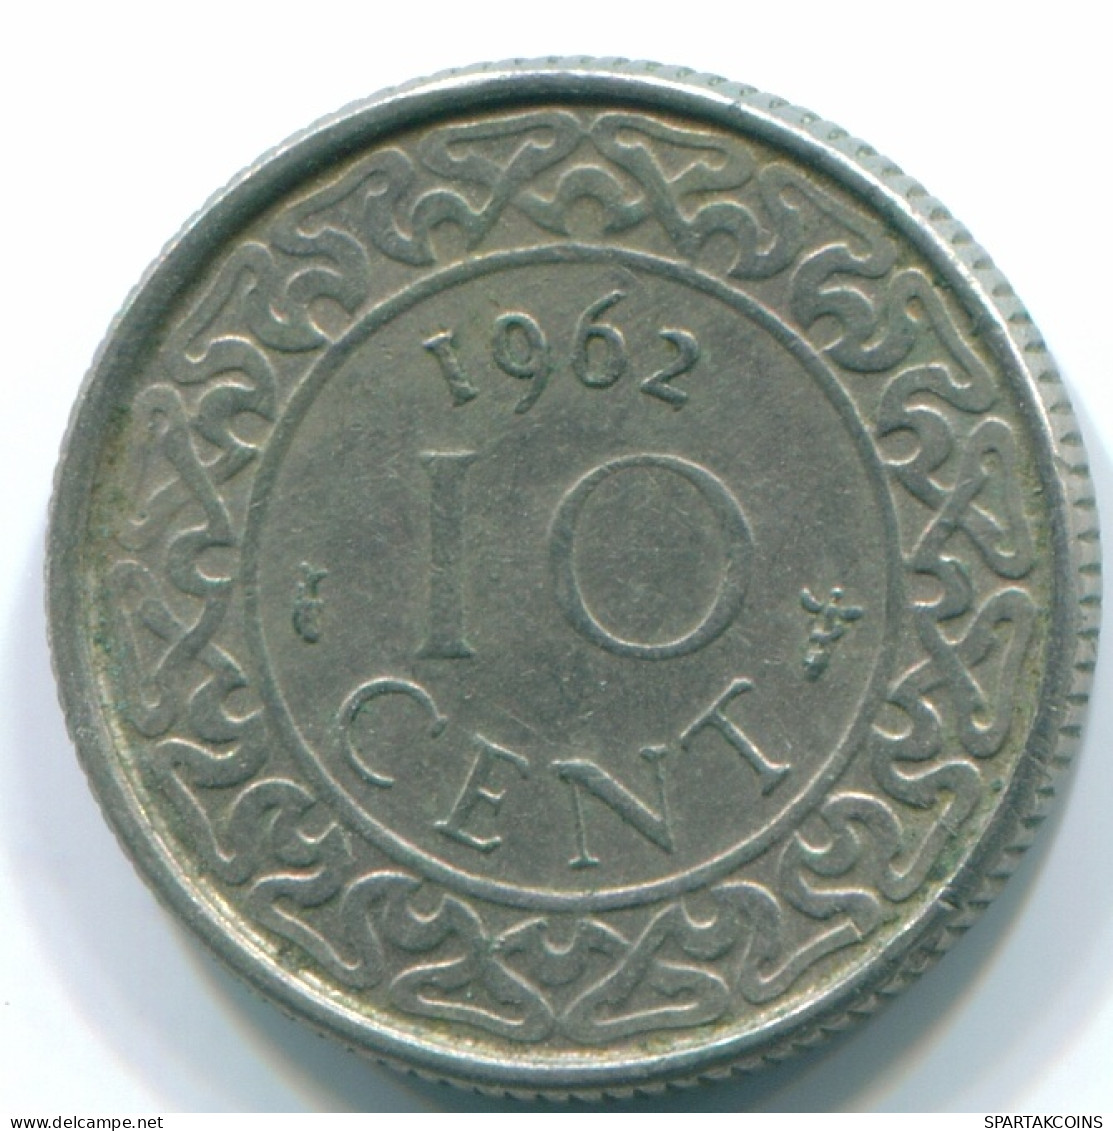 10 CENTS 1962 SURINAME Netherlands Nickel Colonial Coin #S13188.U - Surinam 1975 - ...